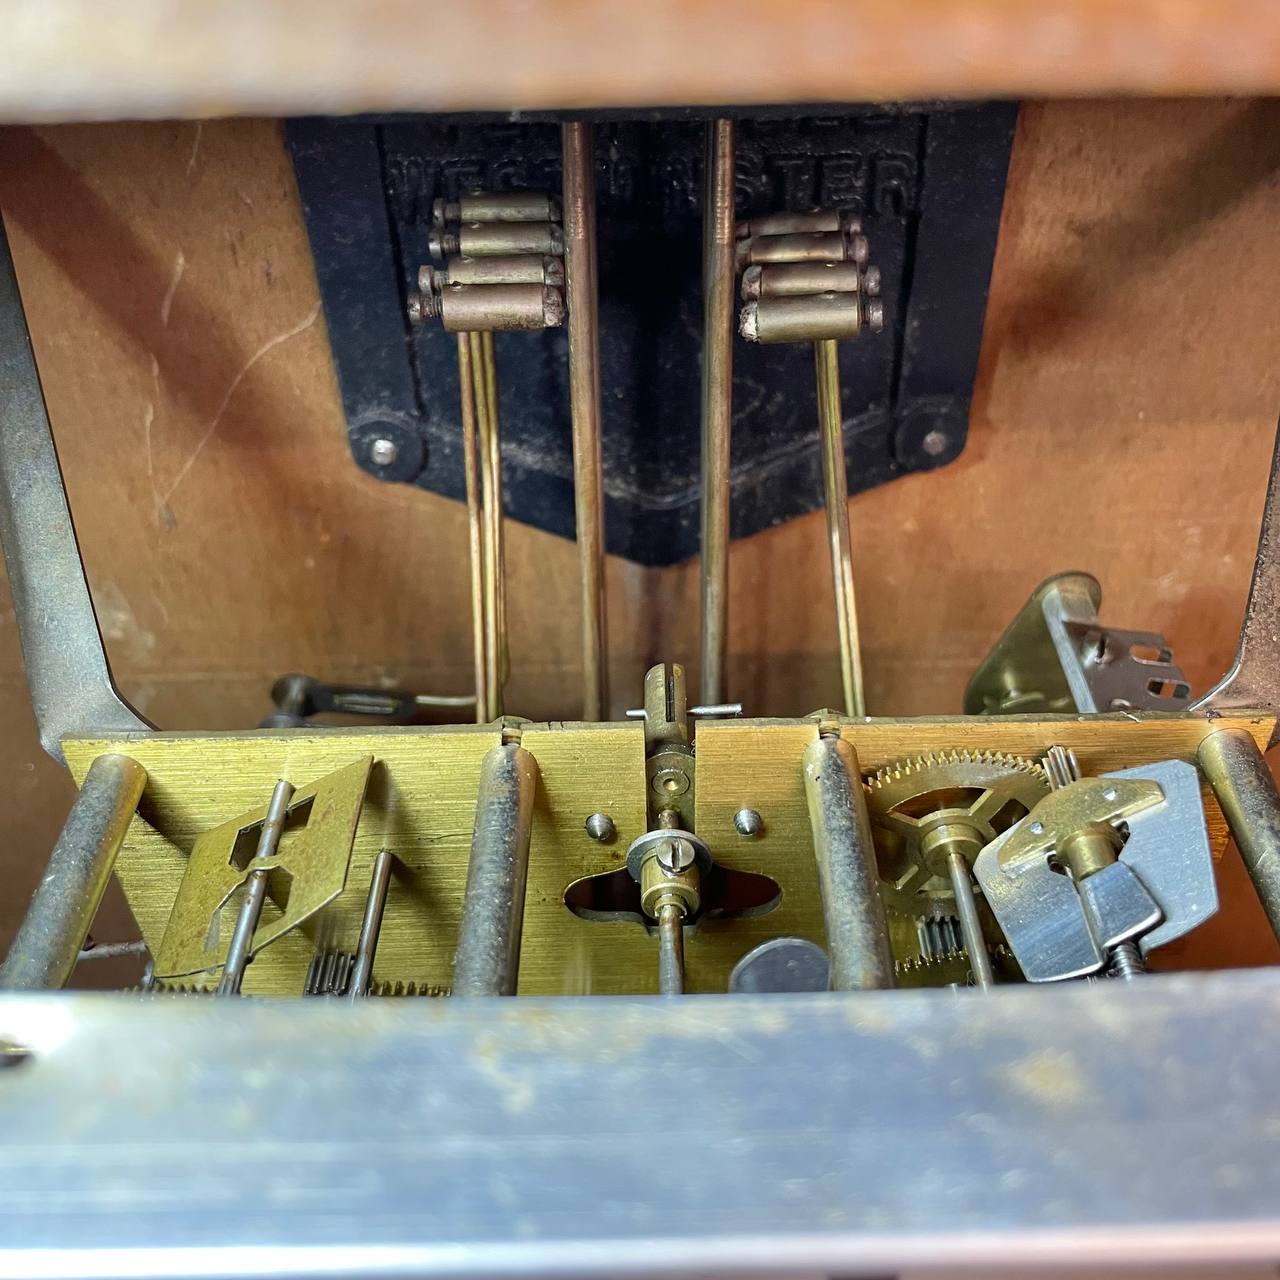 Bộ máy vách đồng của đồng hồ cổ Girod hoạt động chuẩn xác với từng chi tiết bên trong Nguyên Bản kết hợp cùng với bộ gông 8 thanh gông đồng chơi lên tiếng chuông bản nhạc Westminter 15 phút điểm nhạc 1 lần với tiếng chuông ngân nga và trầm ấm.